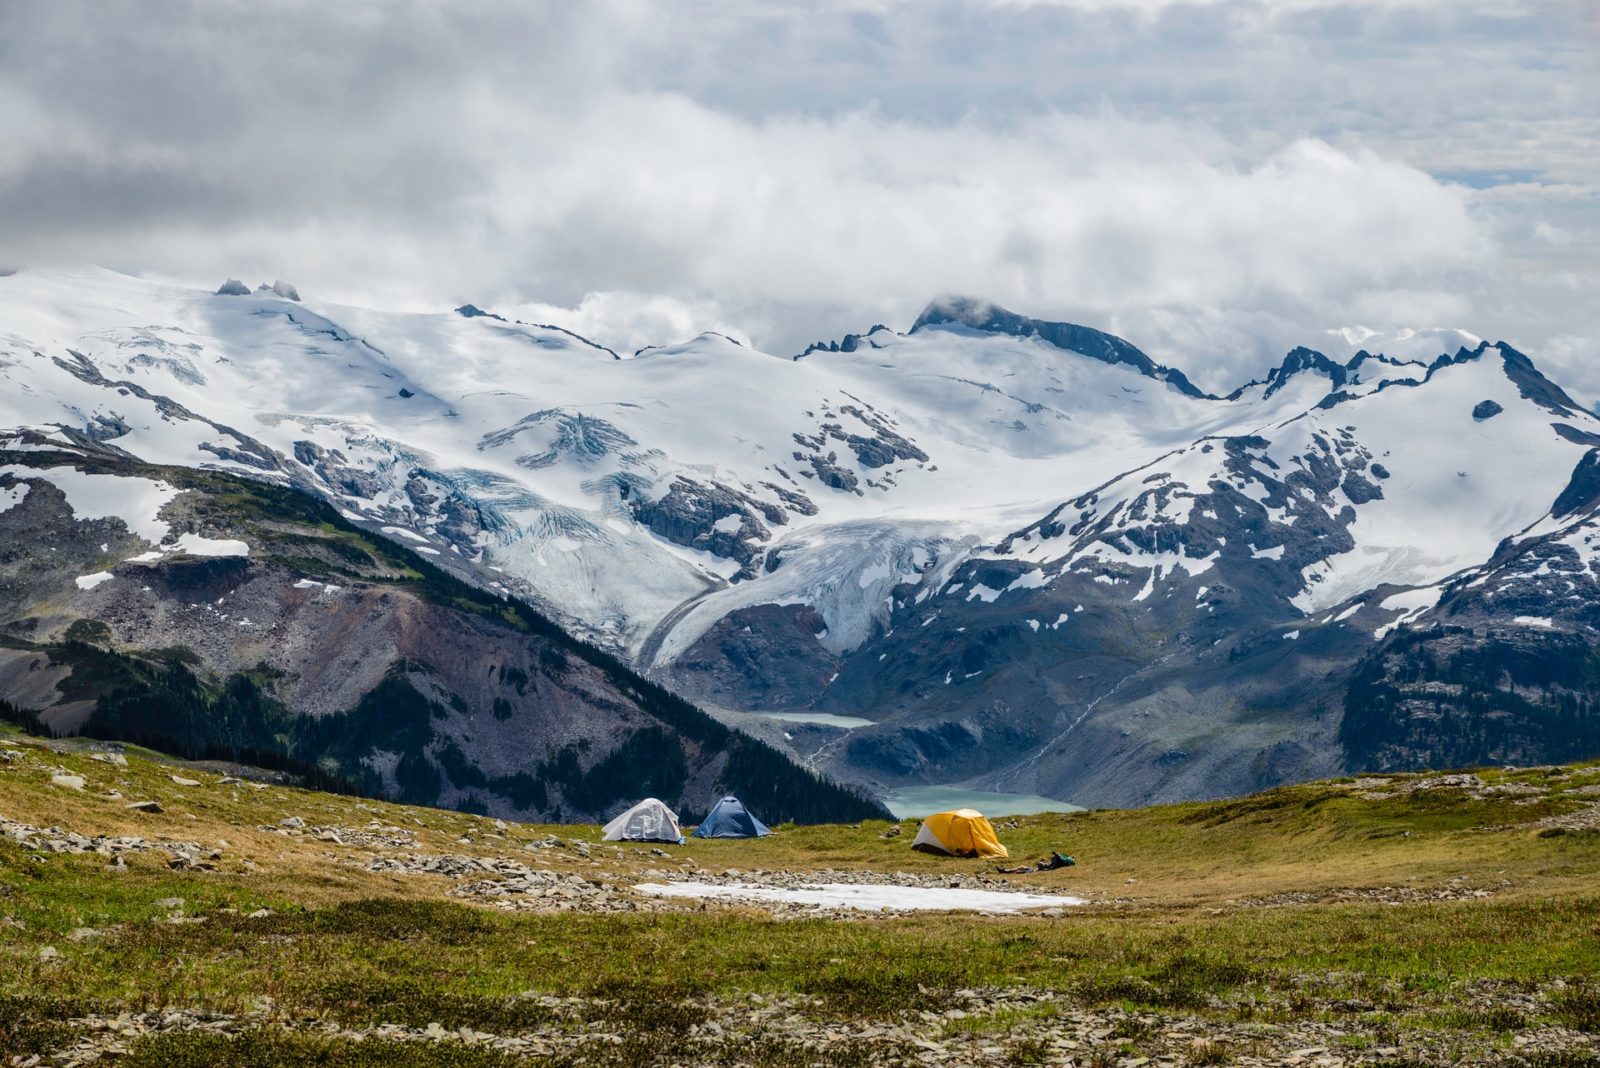 Camping in Garibaldi Provincial Park